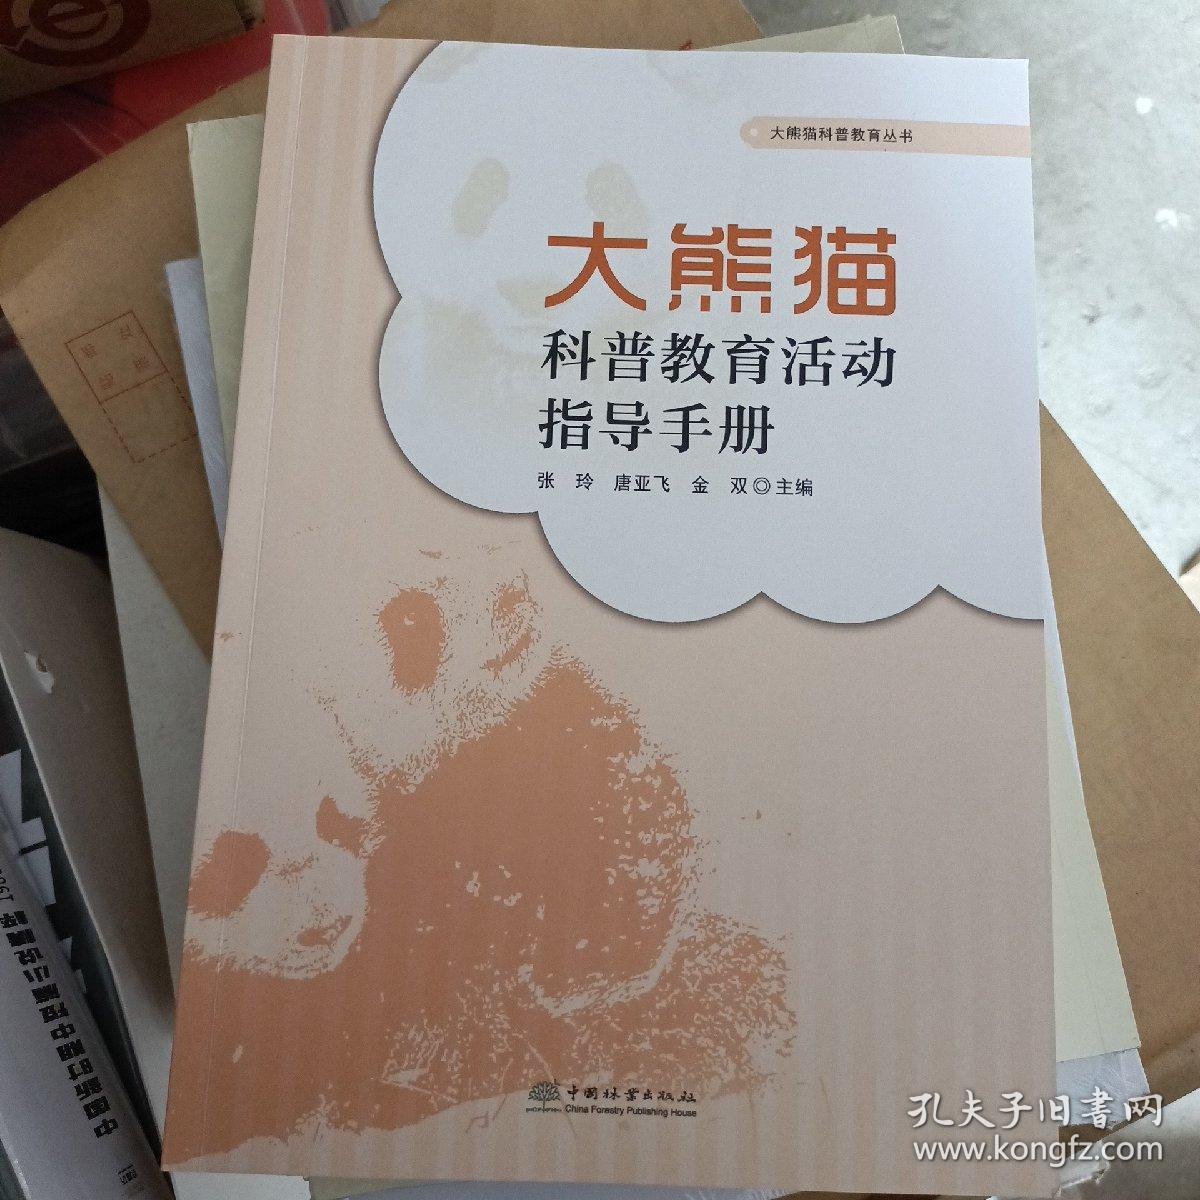 大熊猫科普教育活动指导手册